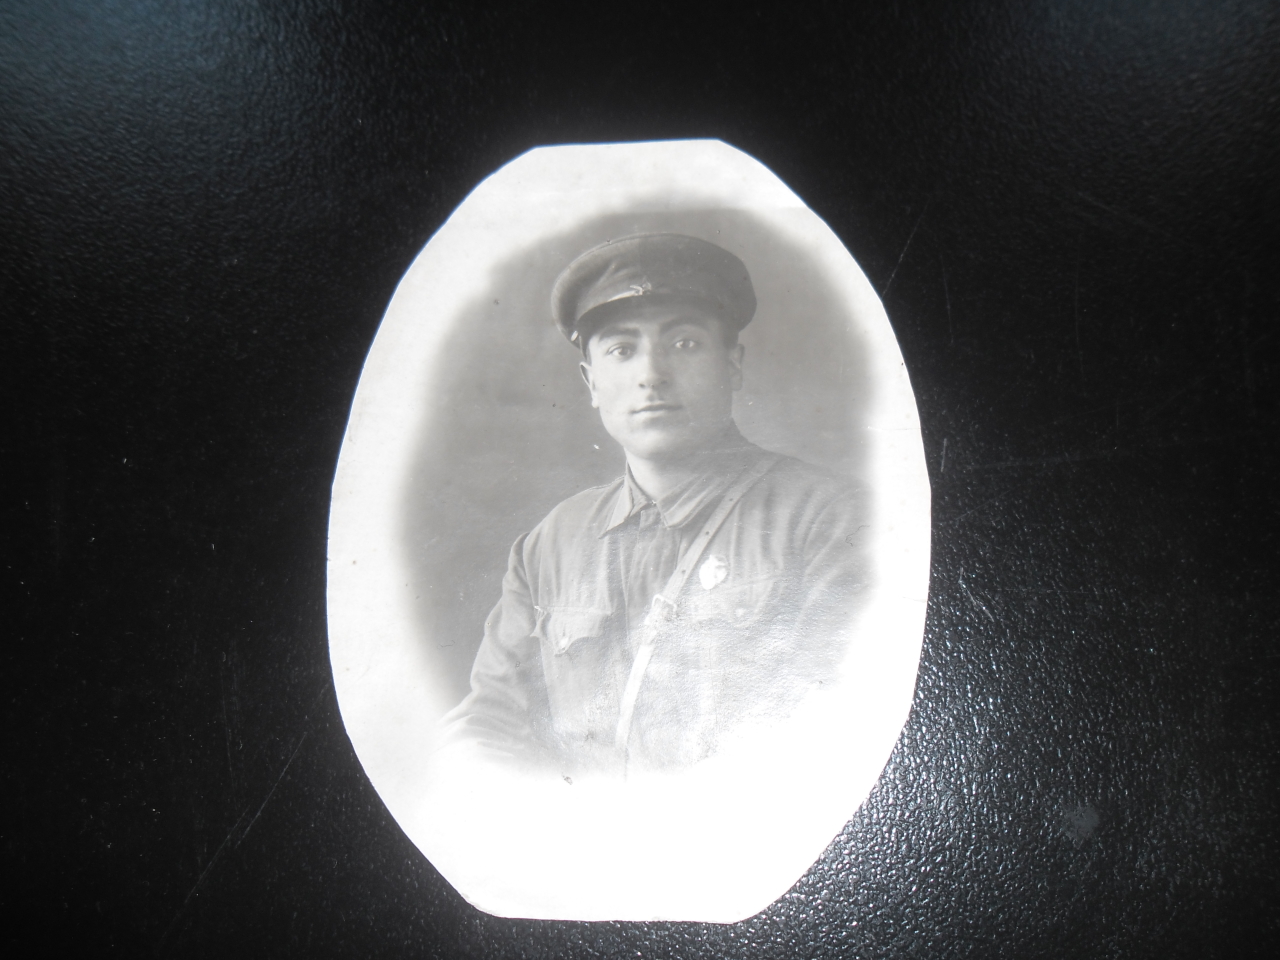 Լուսանկար՝ Հրաչիկ Արմենակի Ասոյանի (Հայրենական պատերազմի վետերան)